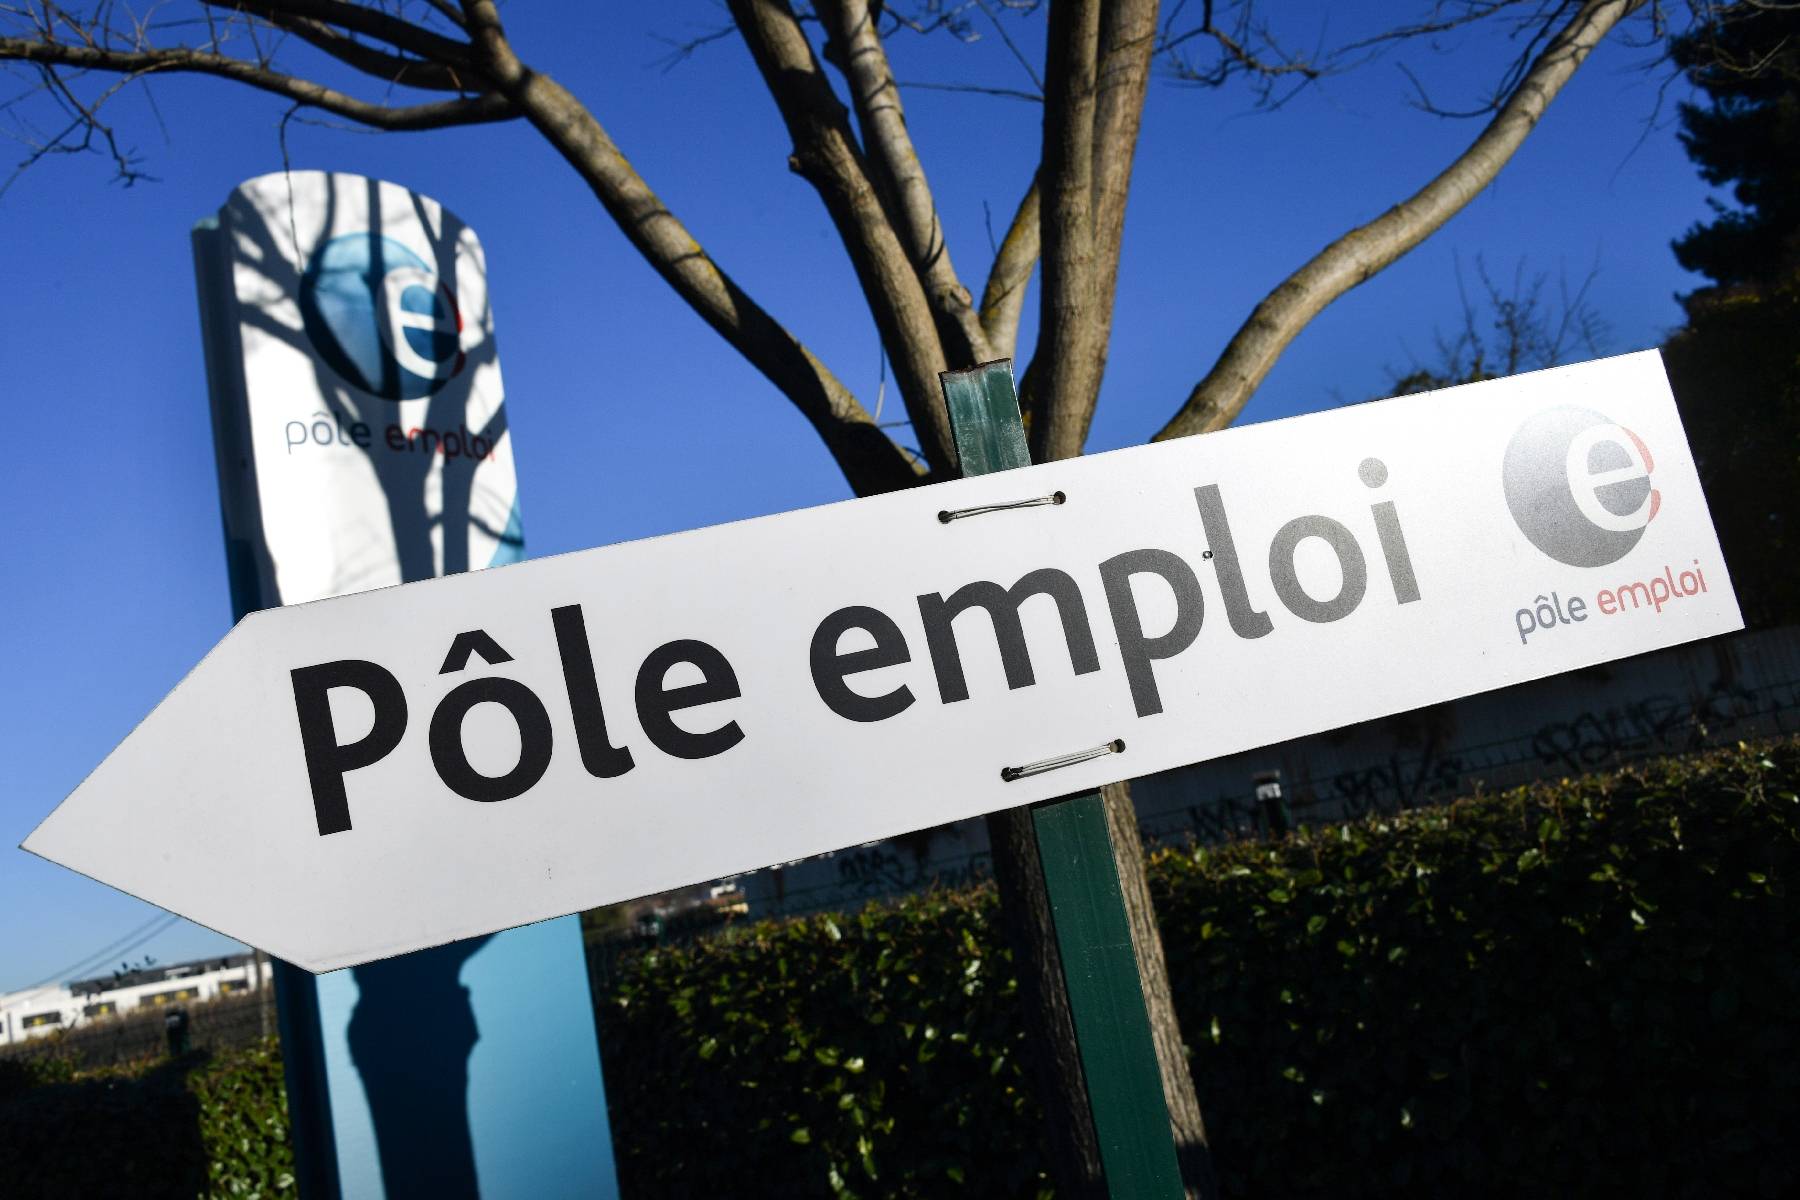 Le nombre de chômeurs quasi stable en janvier, selon la Dares